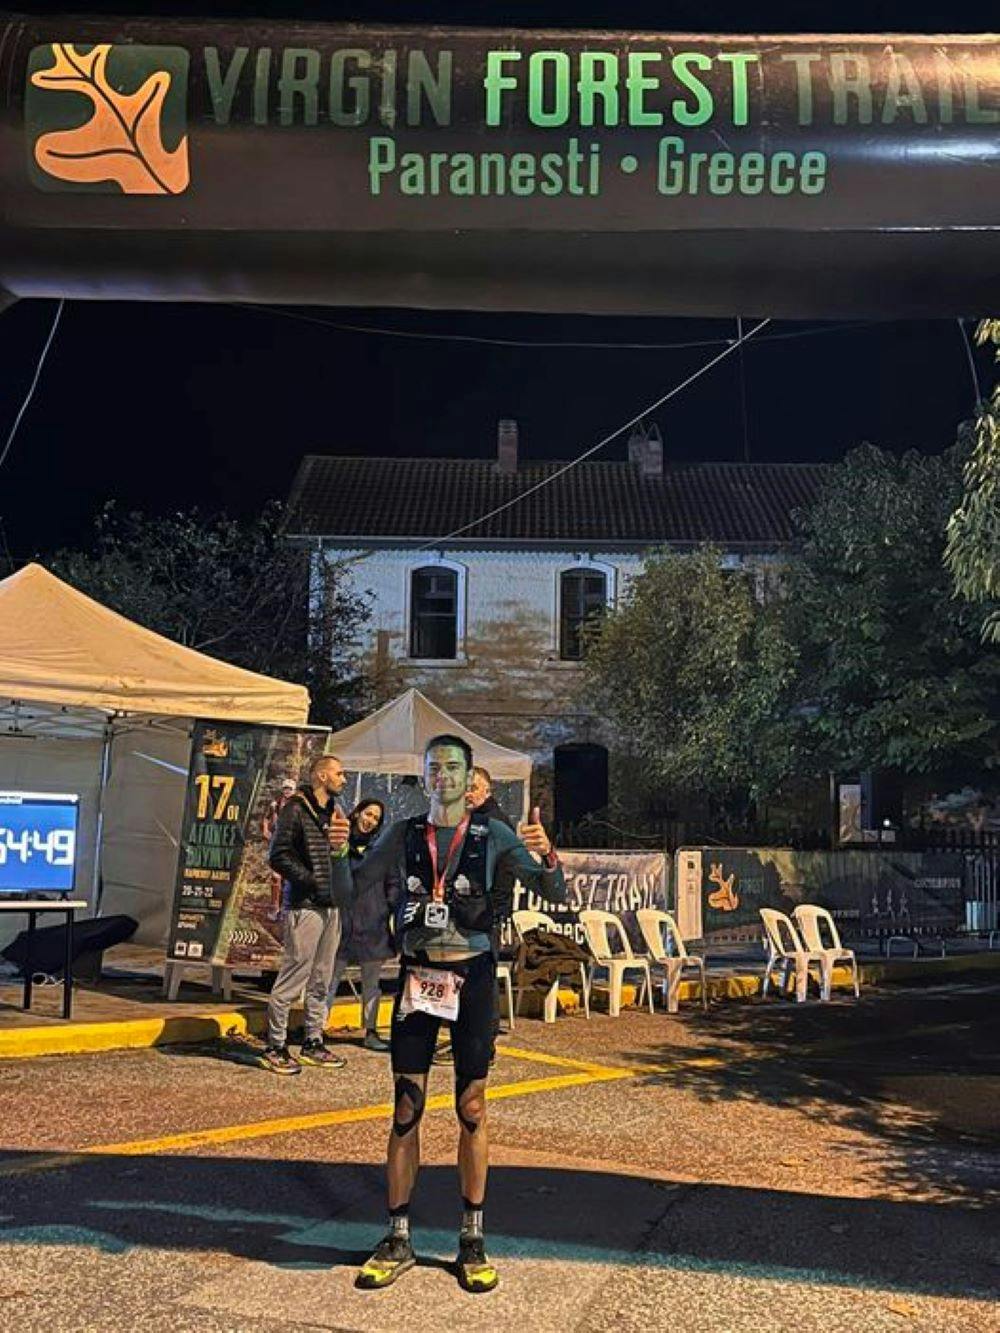 Νικητής με ρεκόρ διαδρομής ο Βαγγέλης Νούλας το Virgin Forest Ultra Trail runbeat.gr 